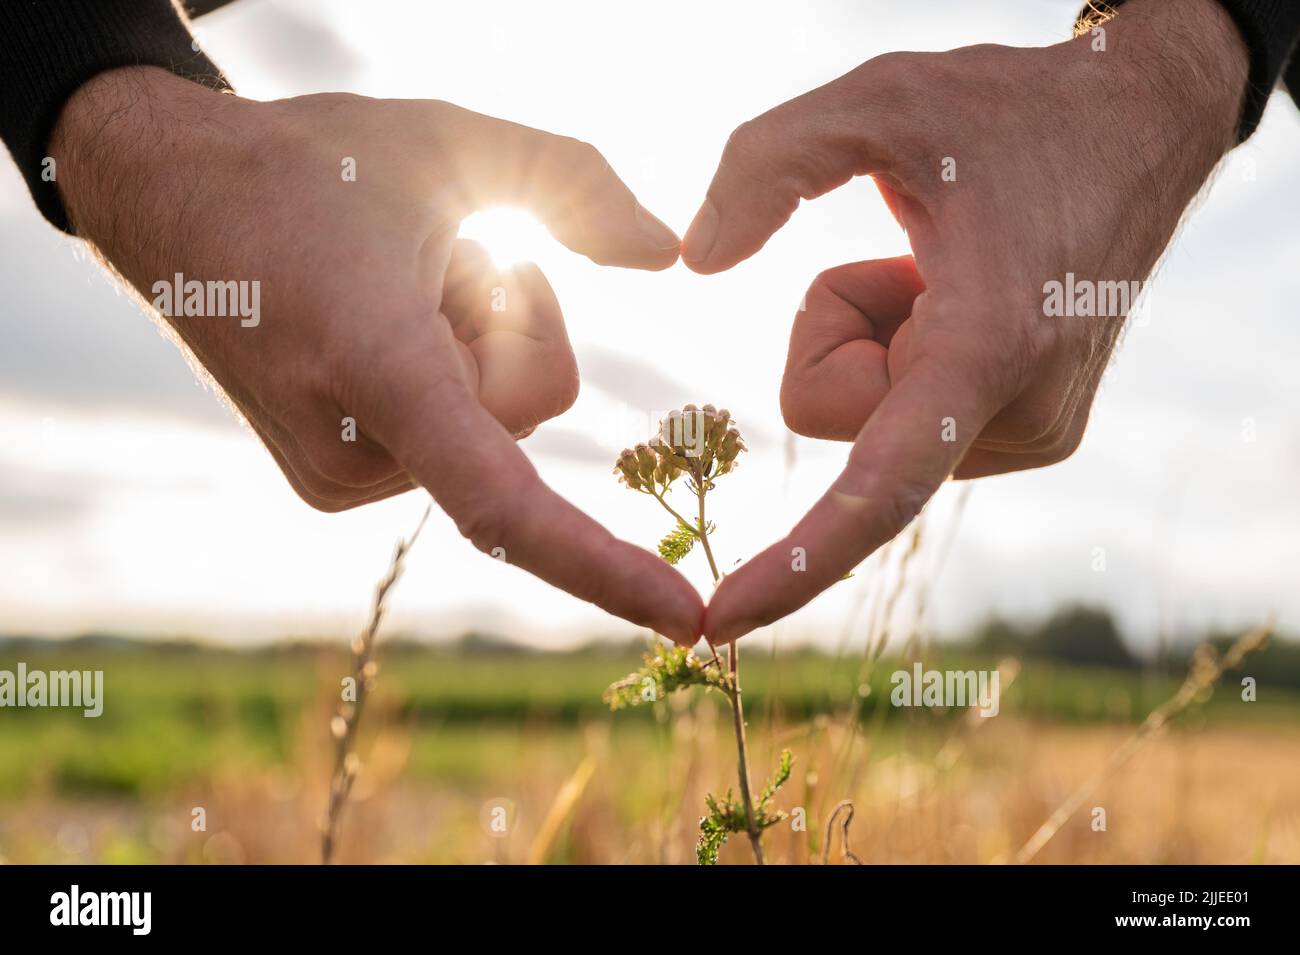 Manos masculinas haciendo una forma del corazón alrededor de una flor que crece en un campo con el sol que pone brillando a través de los dedos. Foto de stock